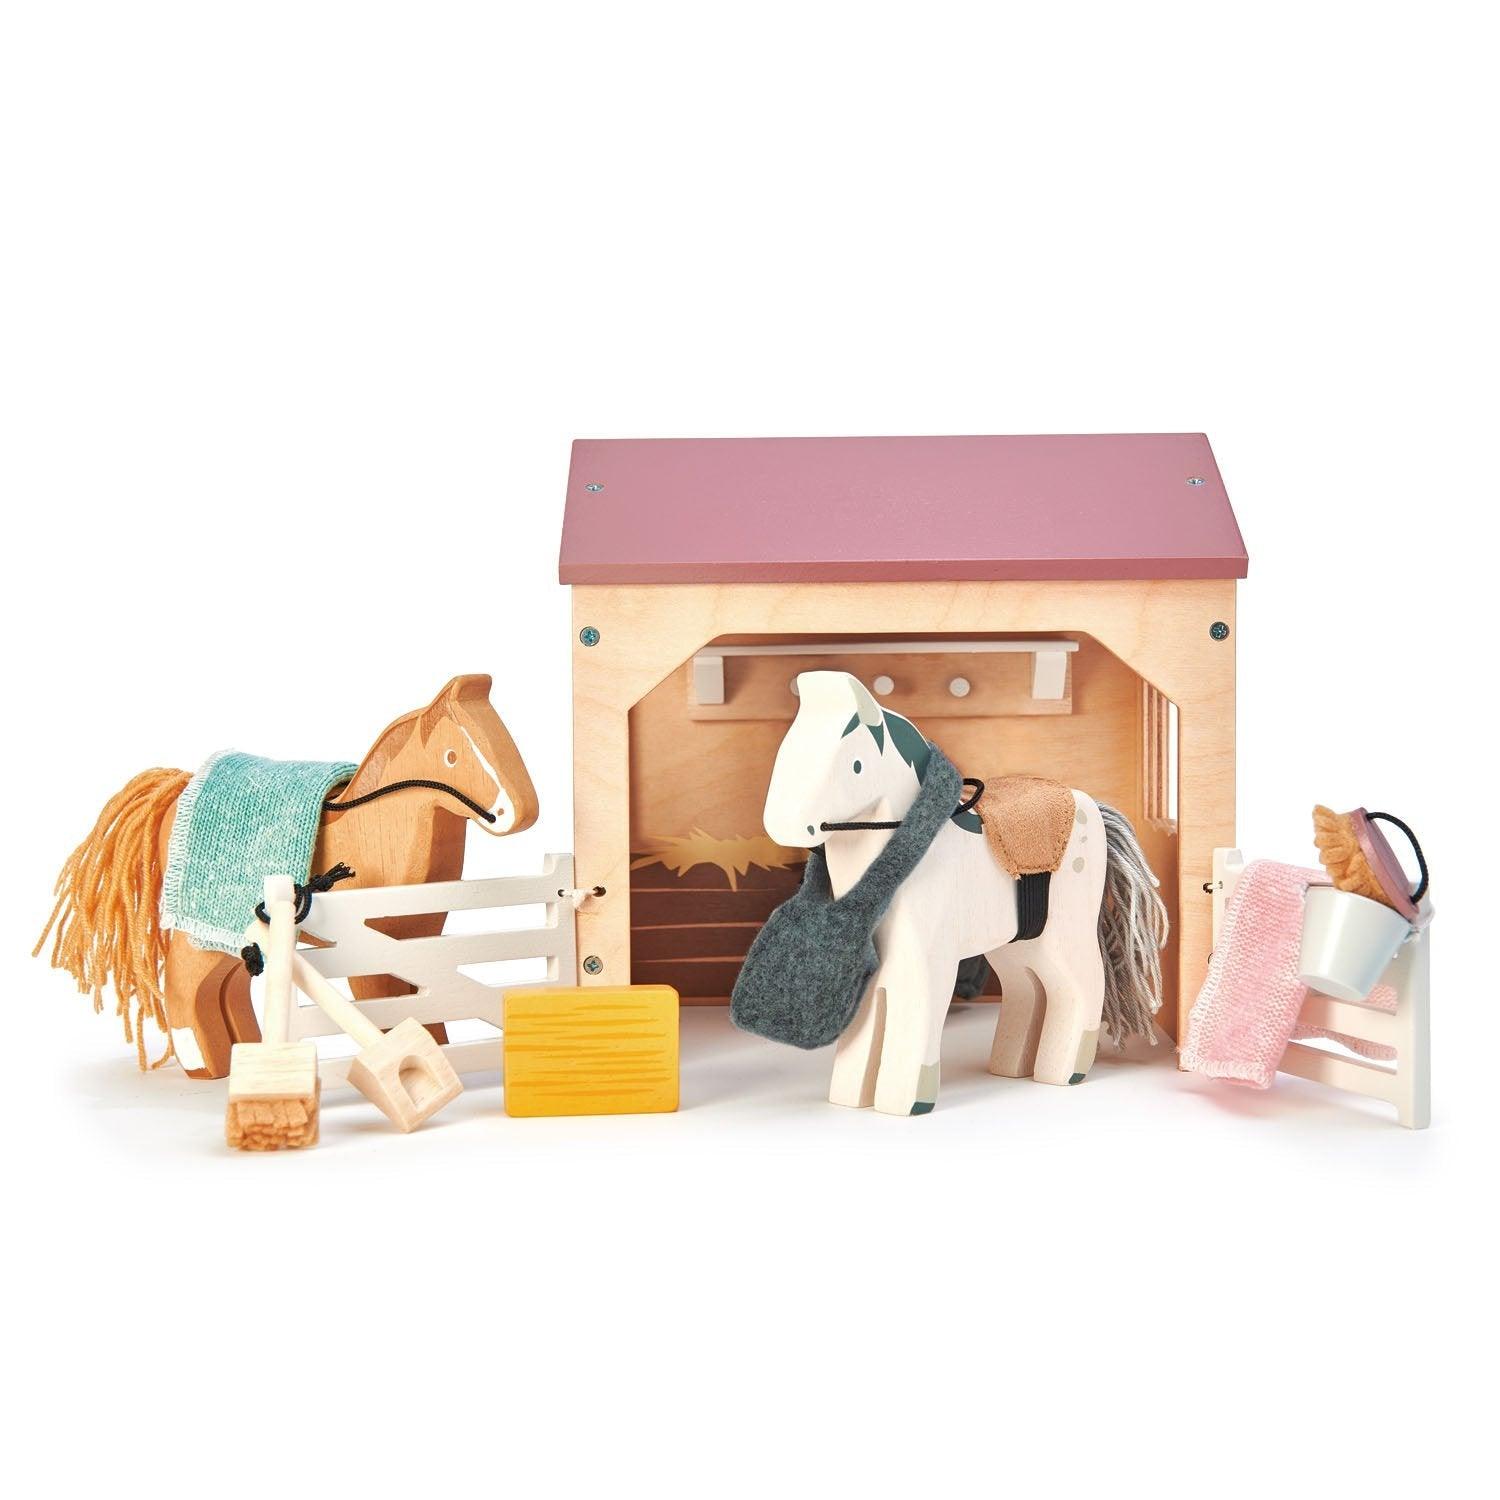 Nježne lišće igračke: drvene figurice stabilne i konje